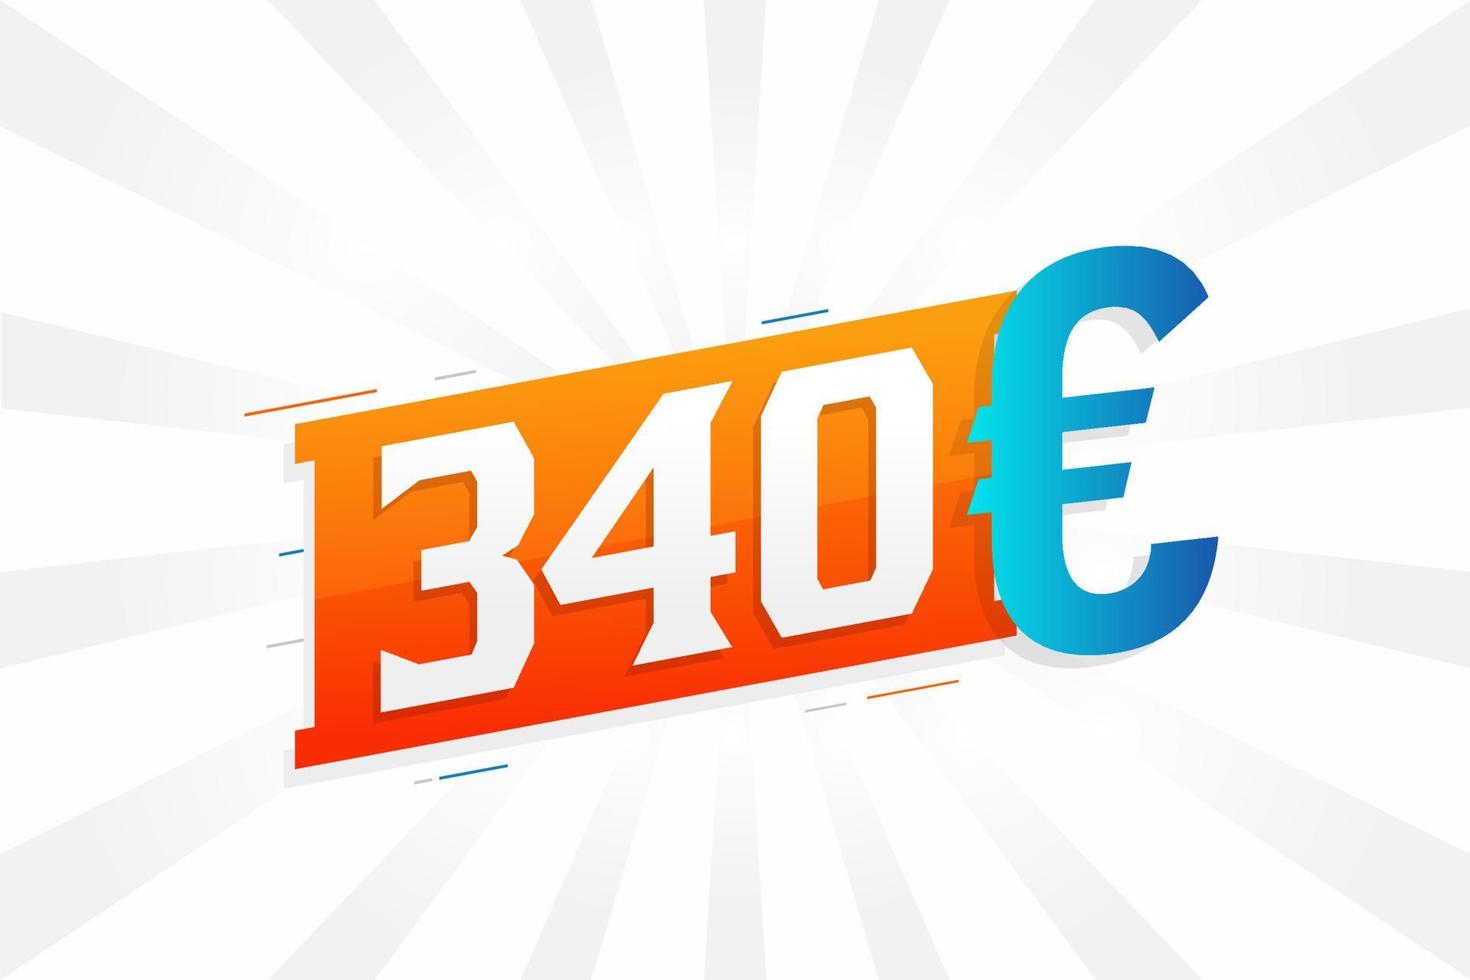 Símbolo de texto de vetor de moeda de 340 euros. vetor de estoque de dinheiro da união europeia de 340 euros